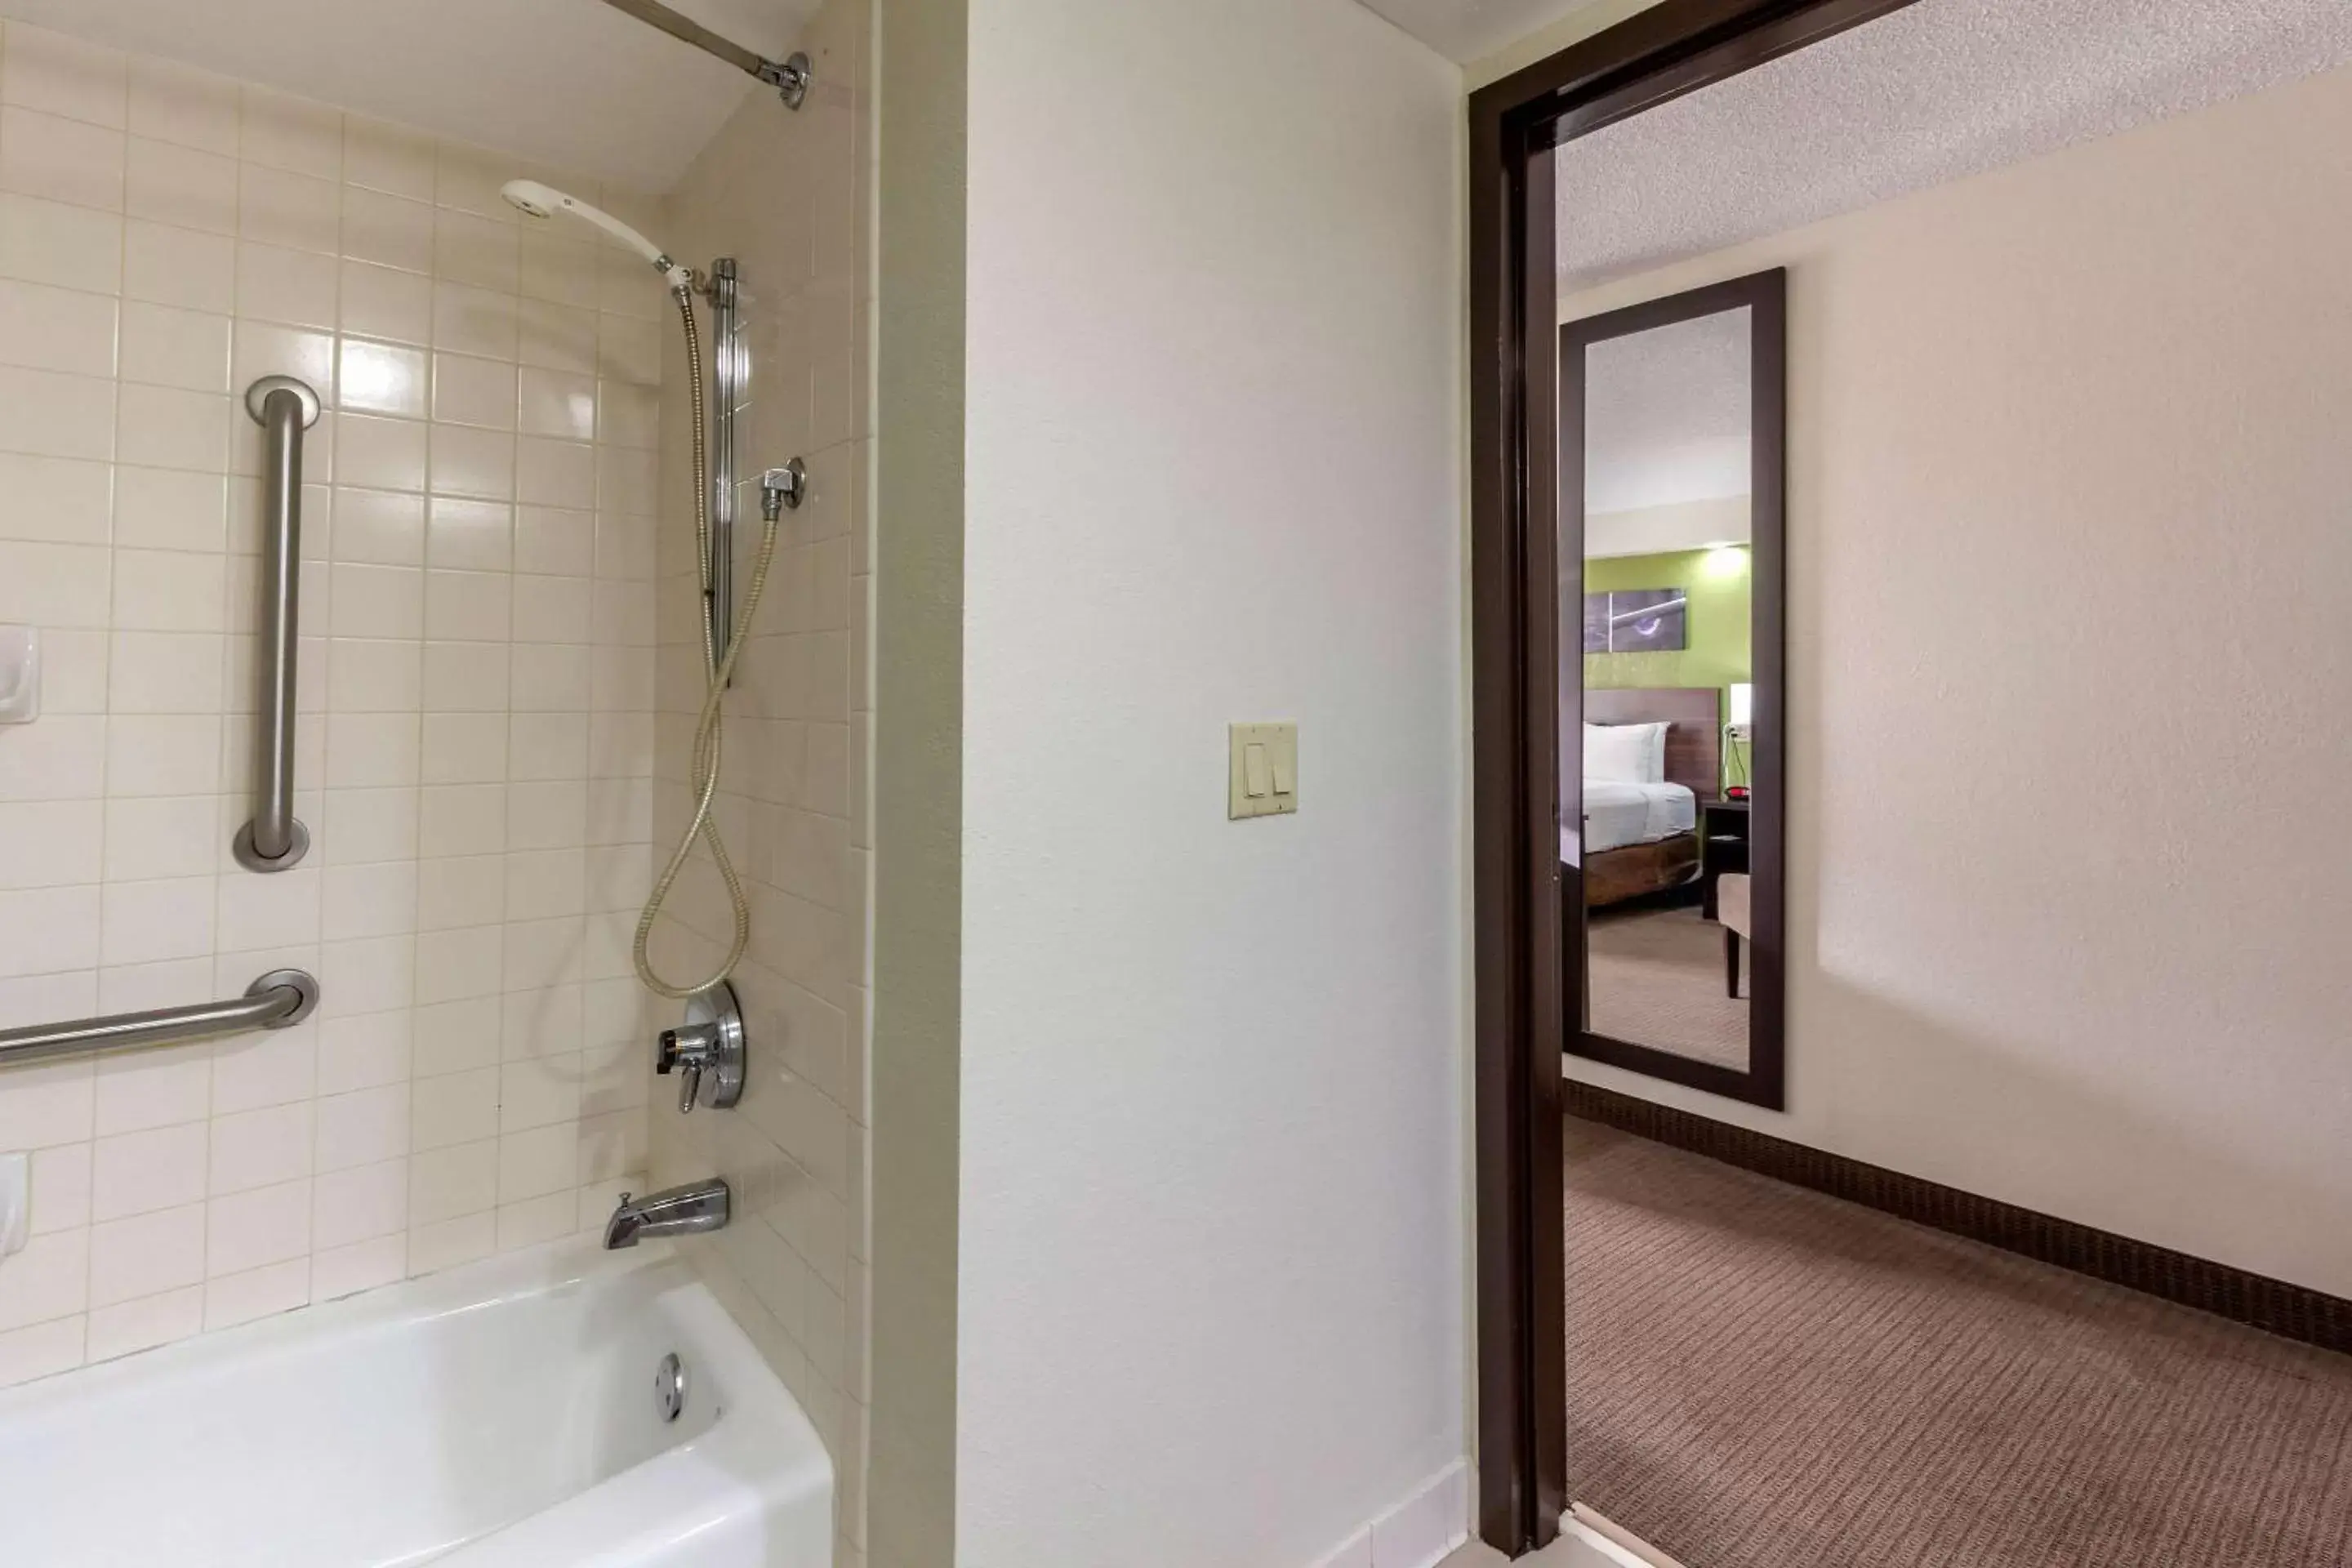 Photo of the whole room, Bathroom in Sleep Inn near Busch Gardens - USF